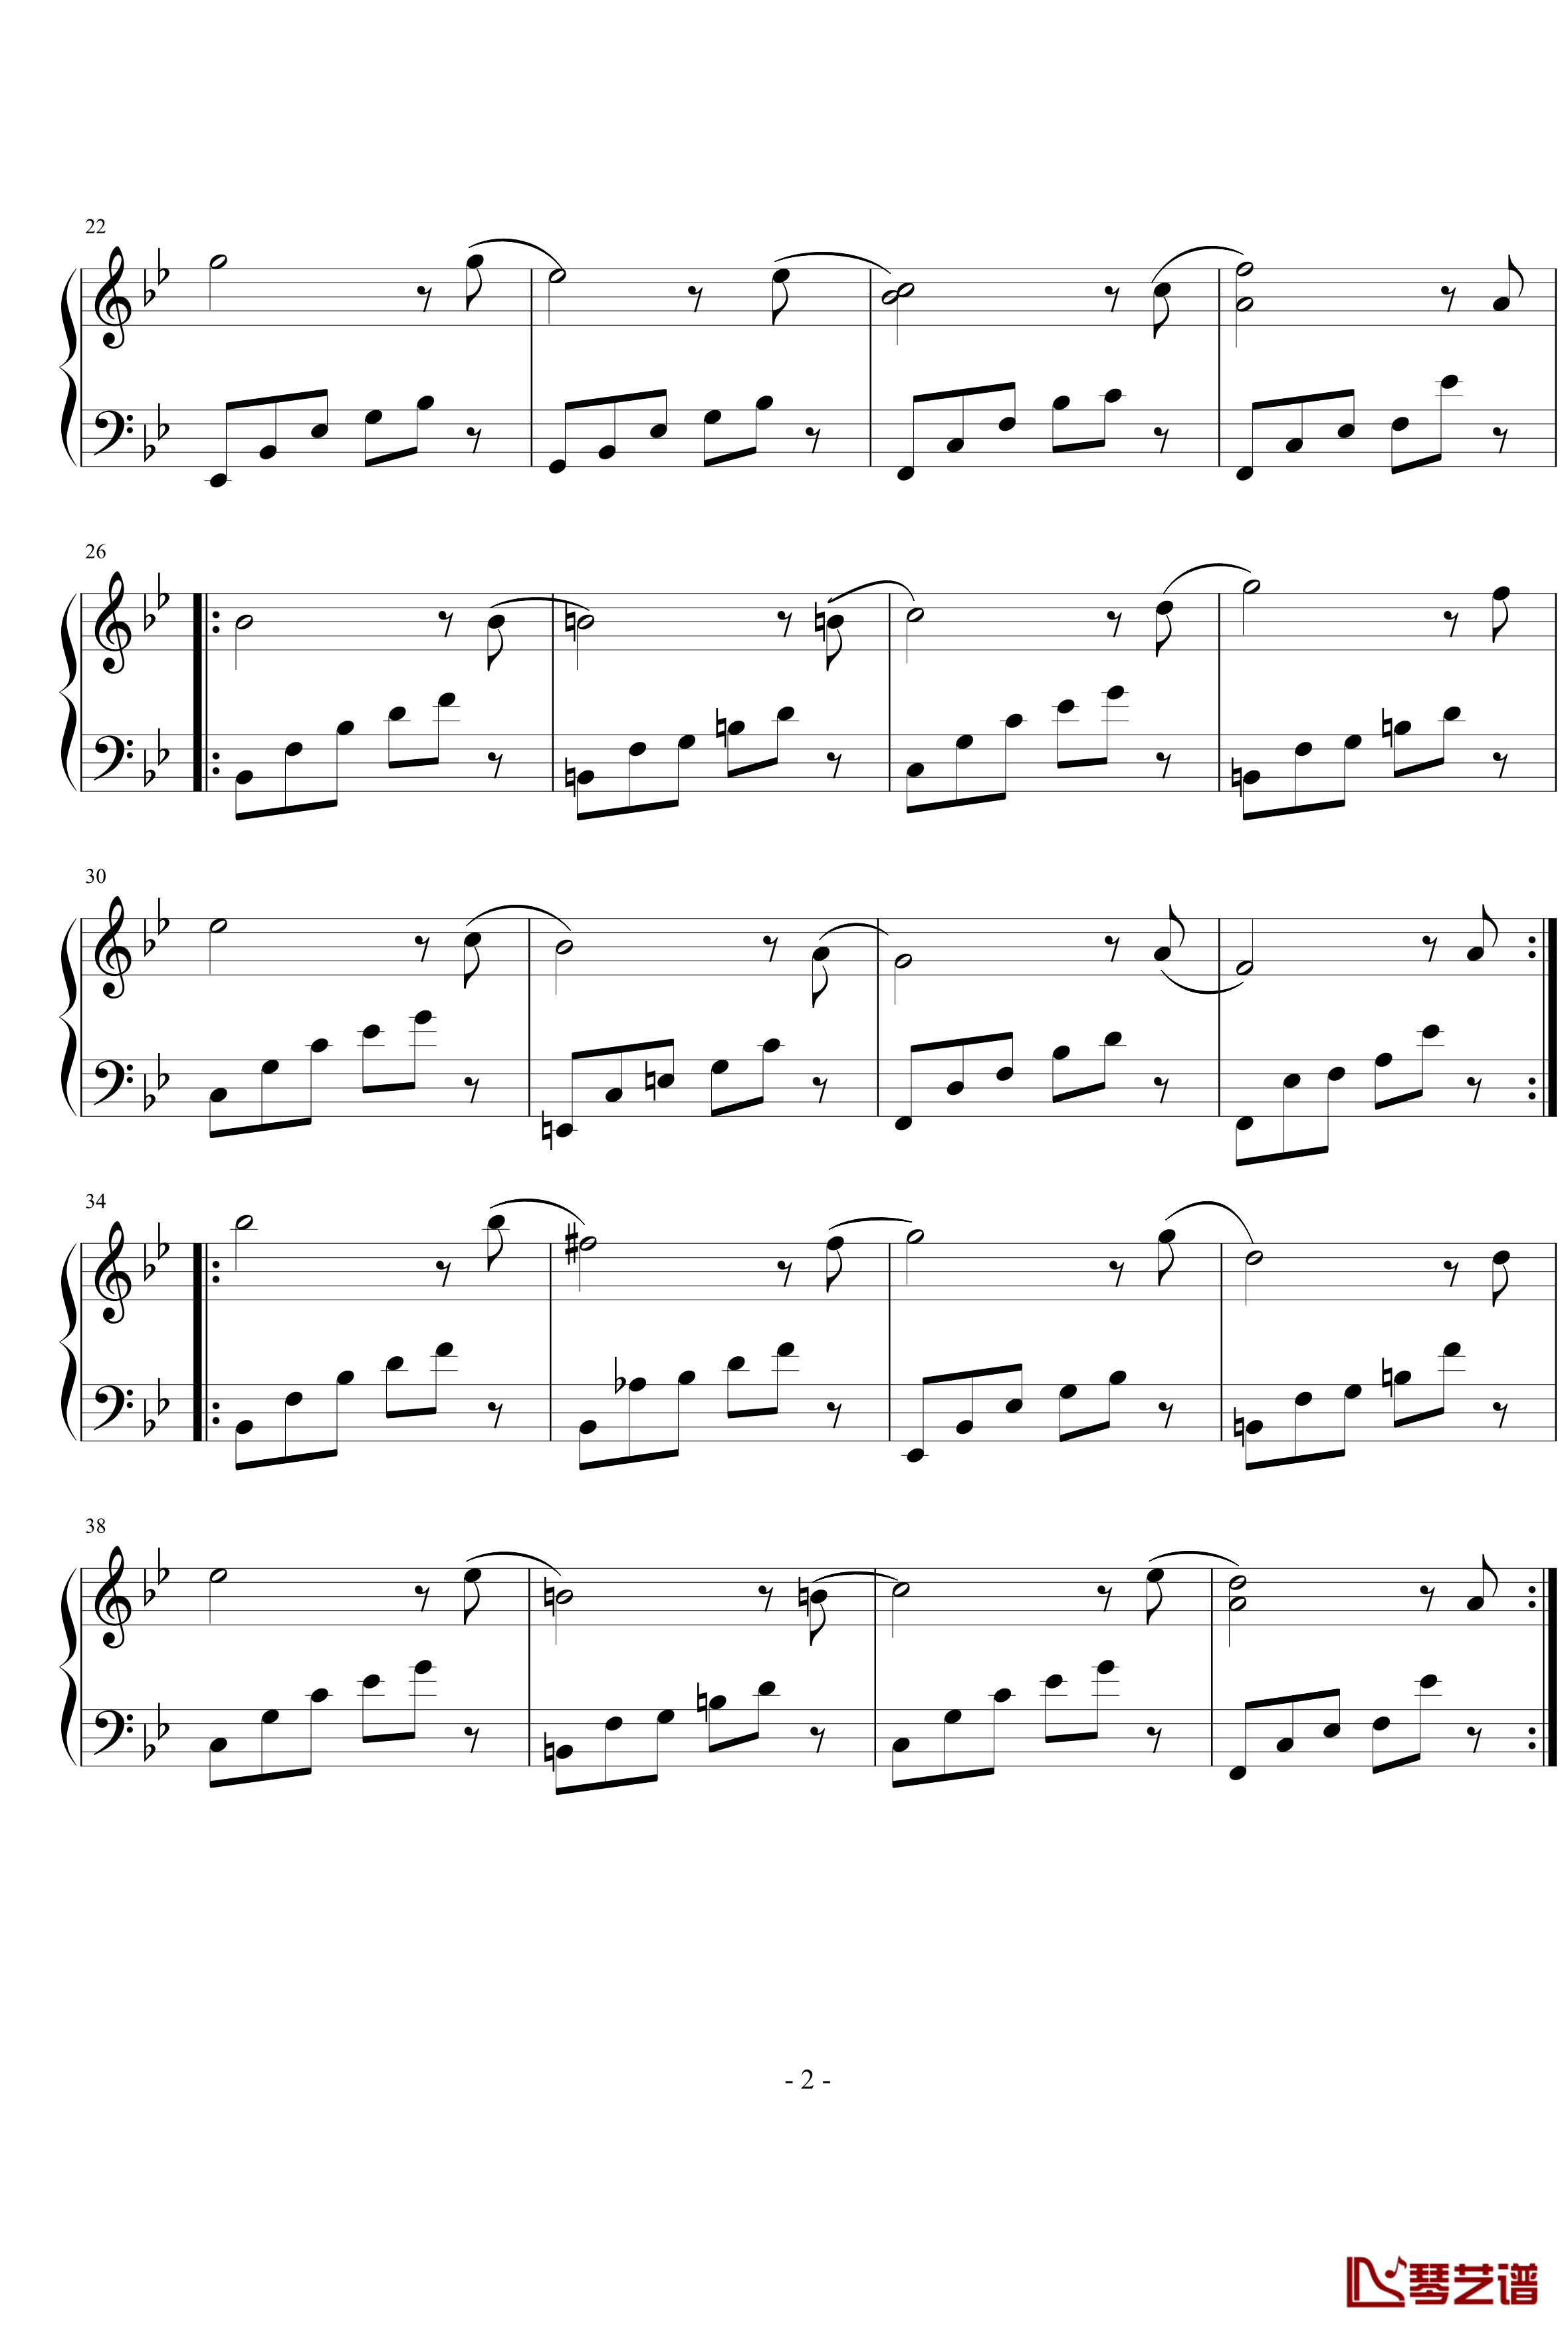 简短的练习曲钢琴谱-nyride2